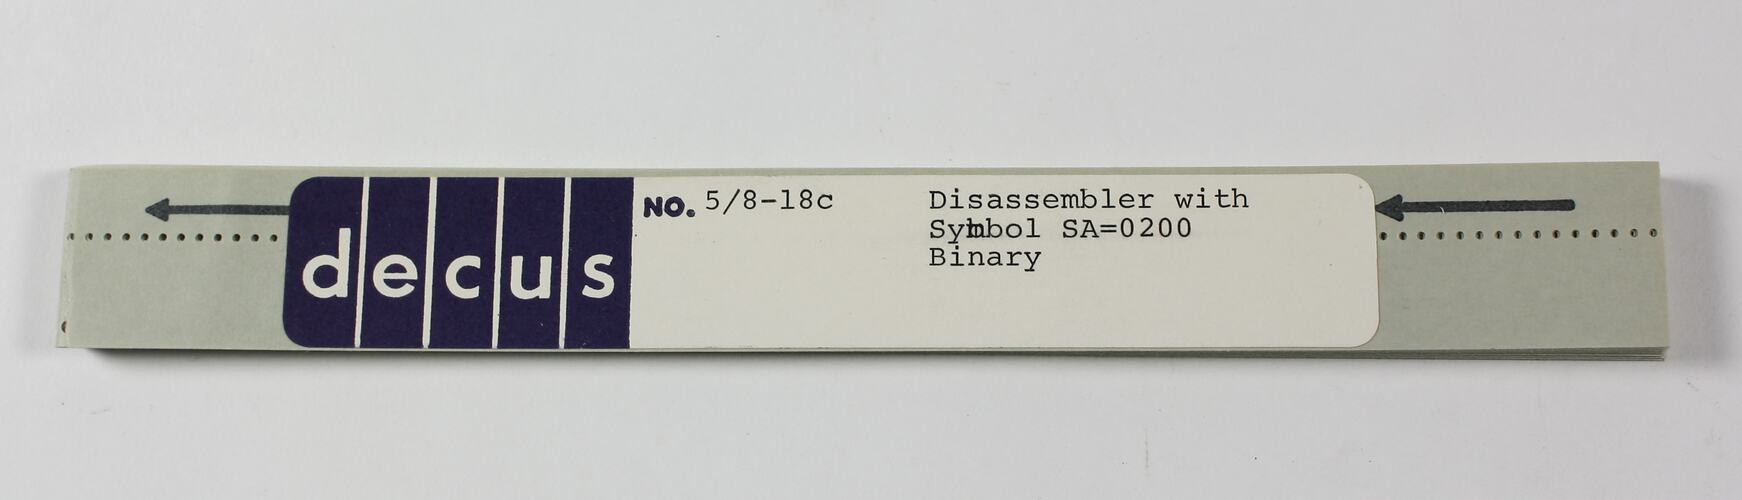 Paper Tape - DECUS, '5/8-18c Disassembler with Symbol, SA=0200, Binary'